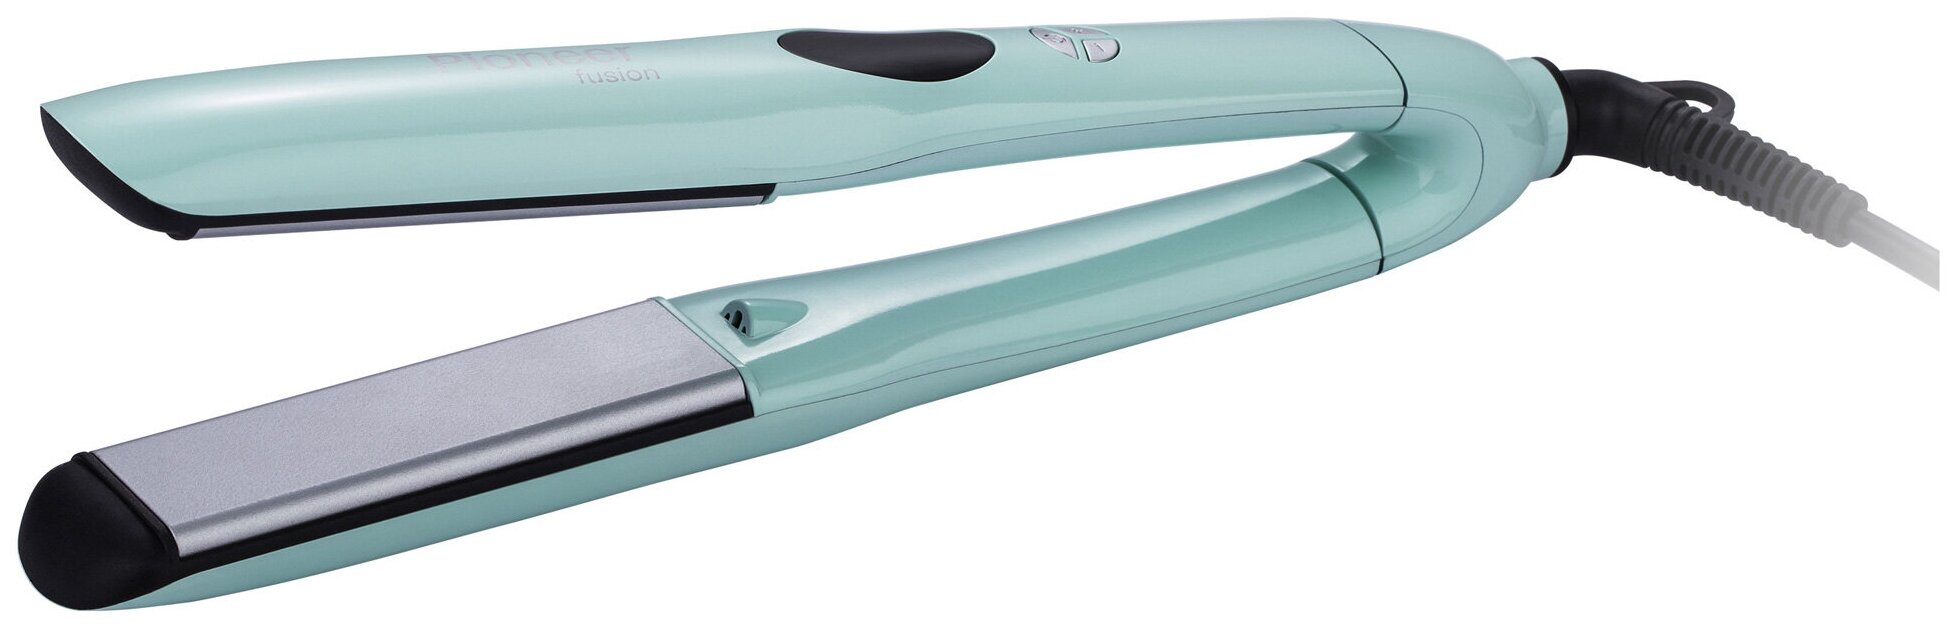 Стайлер для выпрямления волос Pioneer HS-10118 с керамическими пластинами цифровой регулировкой температуры от 100С до 230С быстрым нагревом и автоотключением